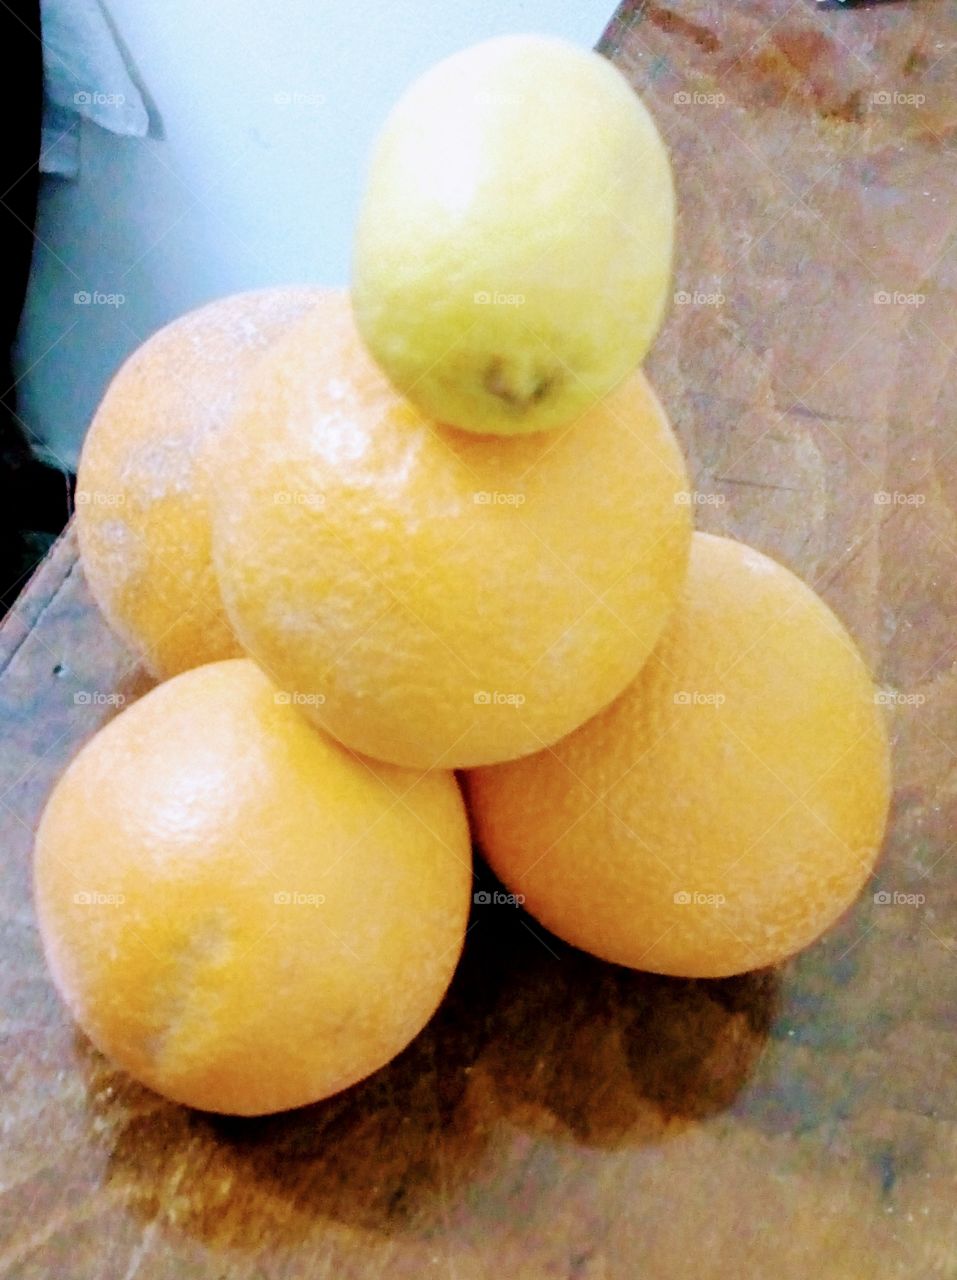 Orange was born a lemon